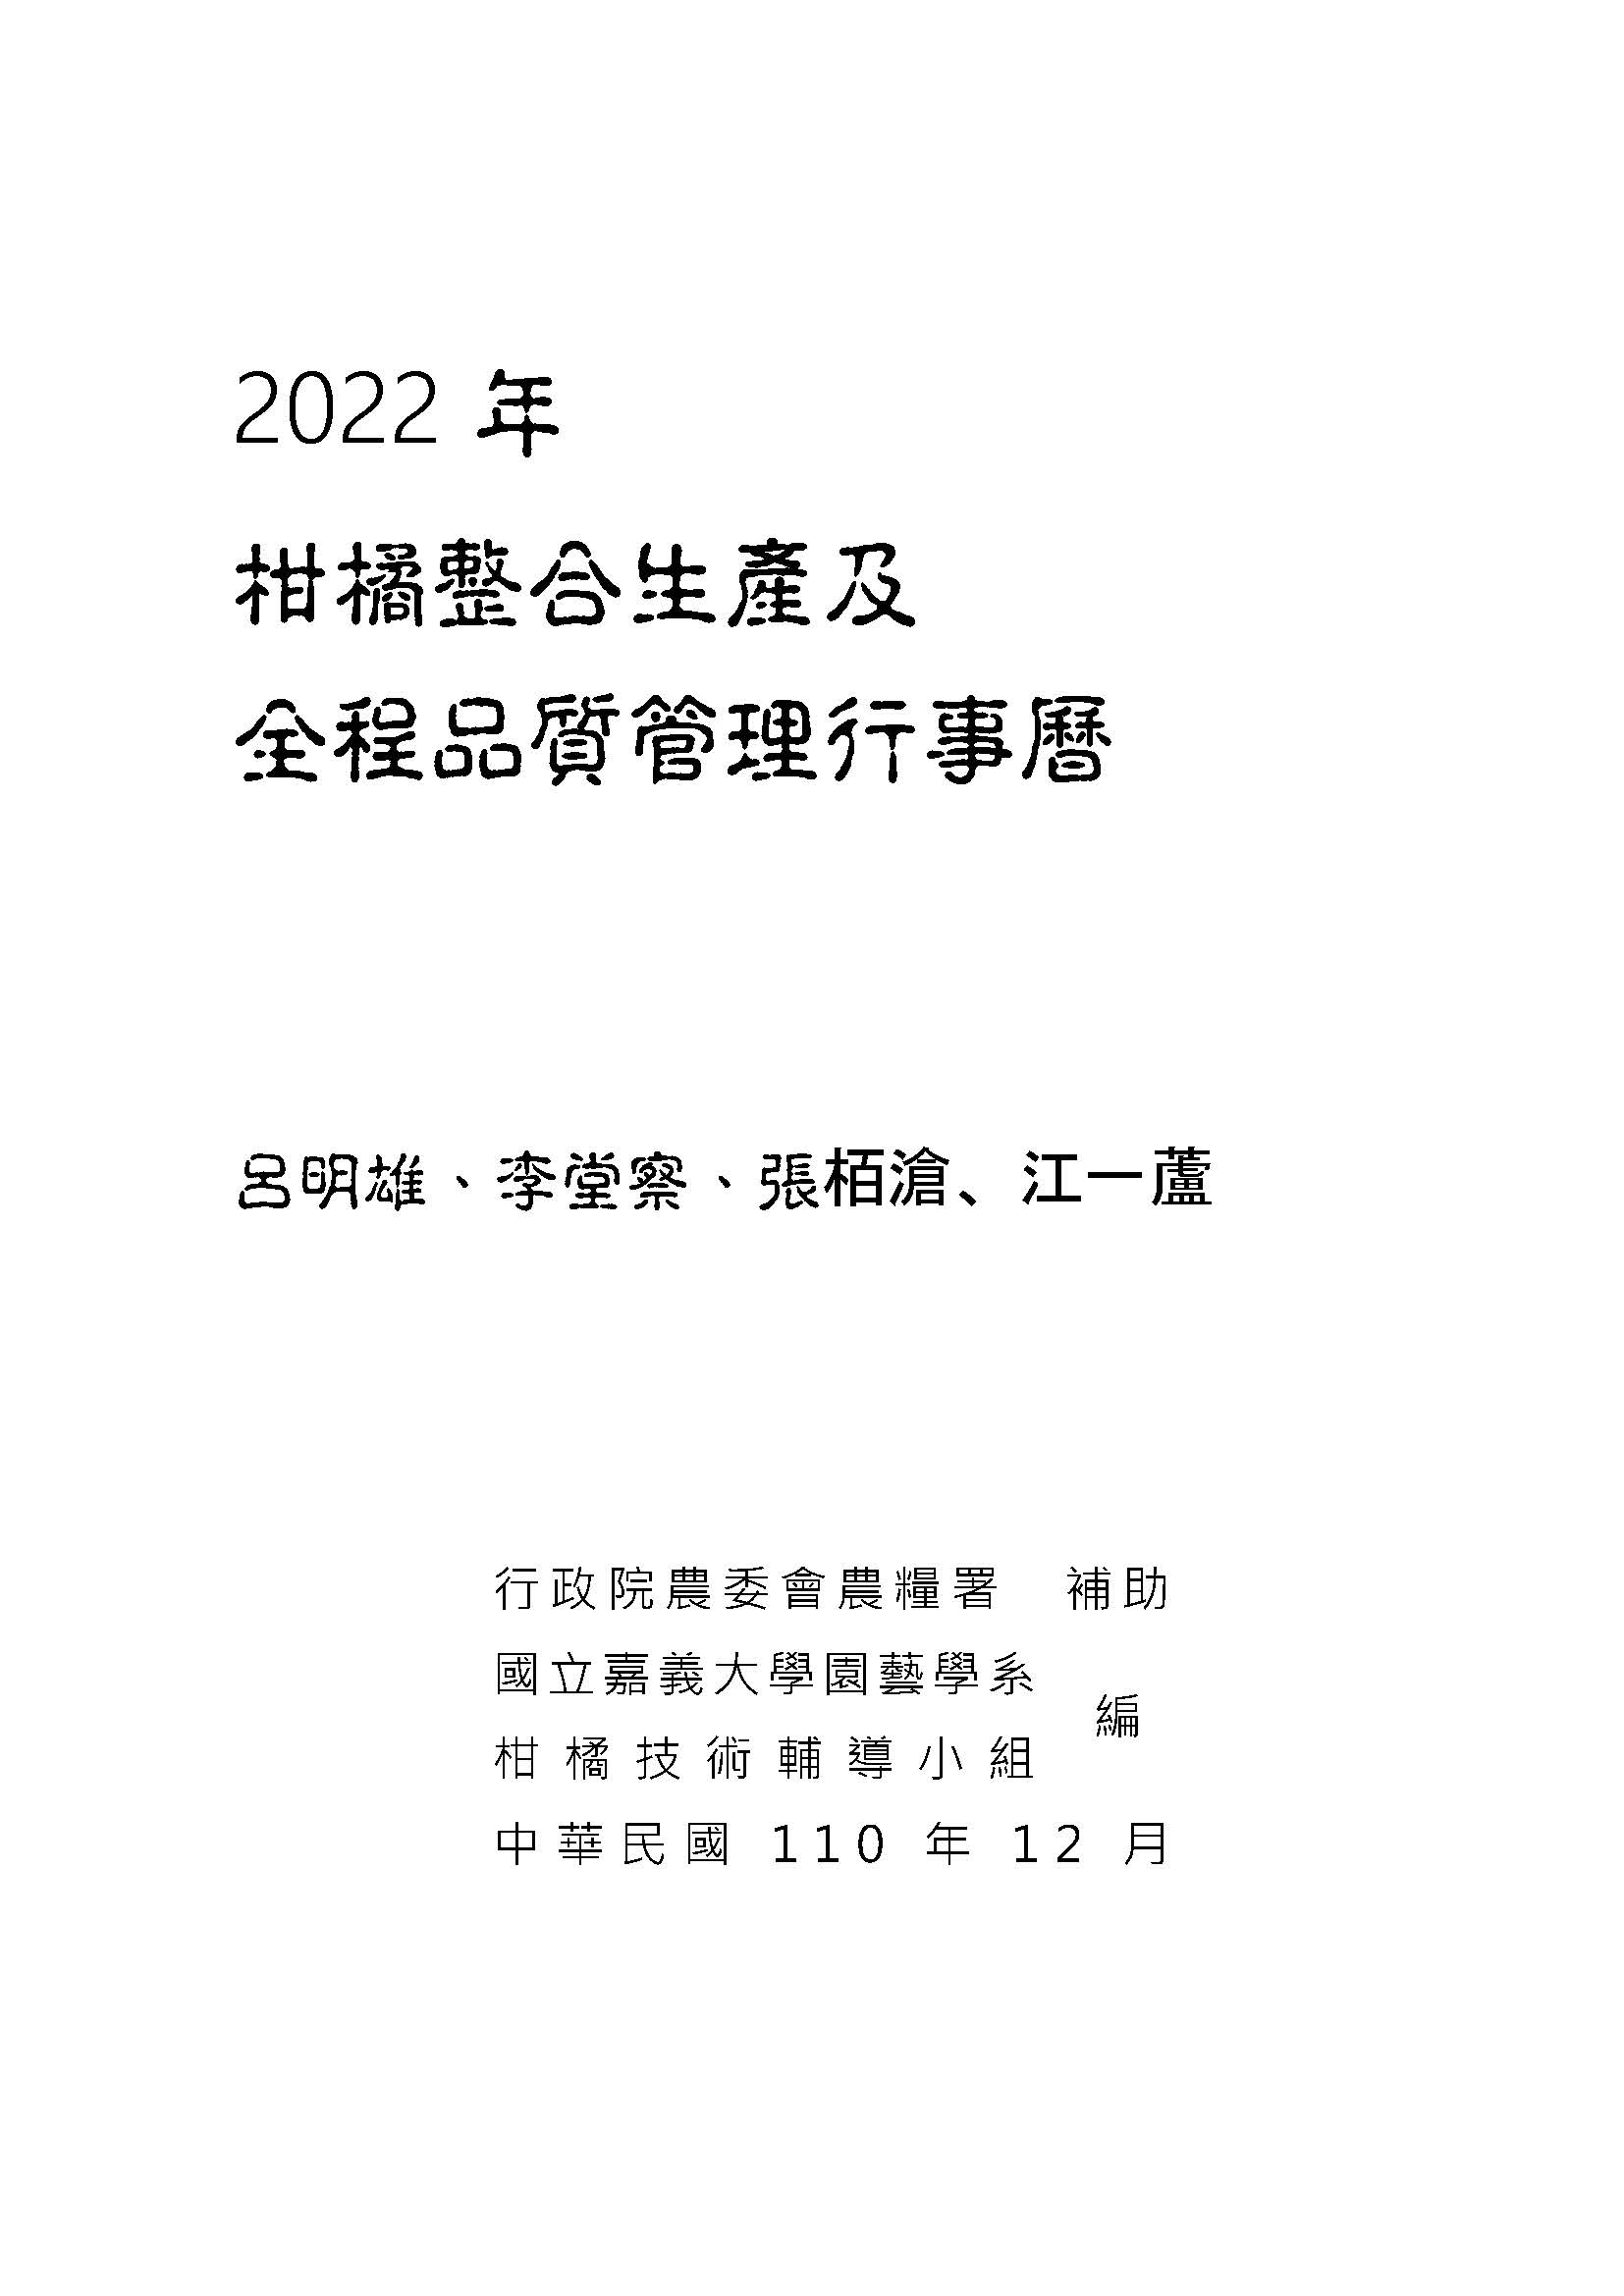 柑橘整合生產及全程品質管理行事曆. 2022年